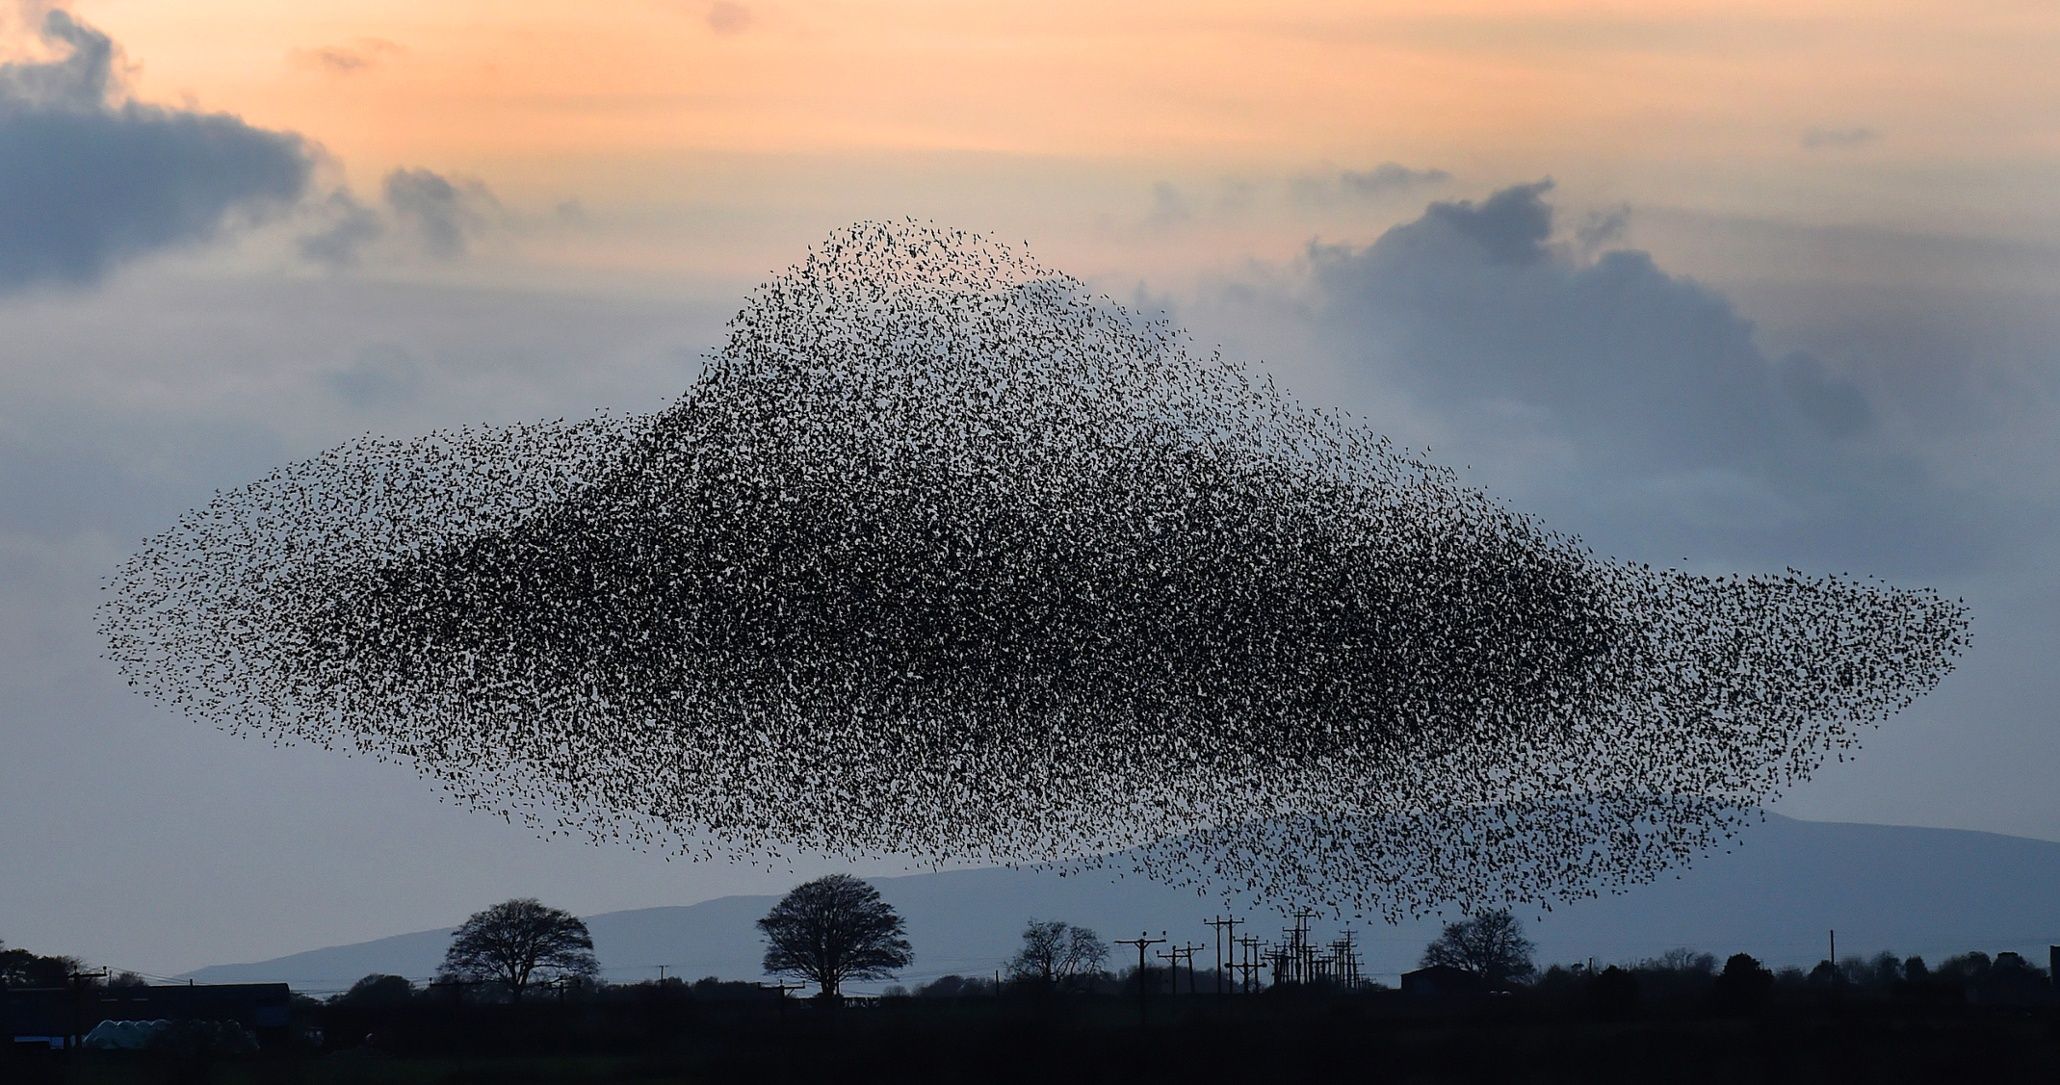 Δείτε ένα σμήνος χιλιάδων πουλιών να εκτελεί περίτεχνους σχηματισμούς (βίντεο)